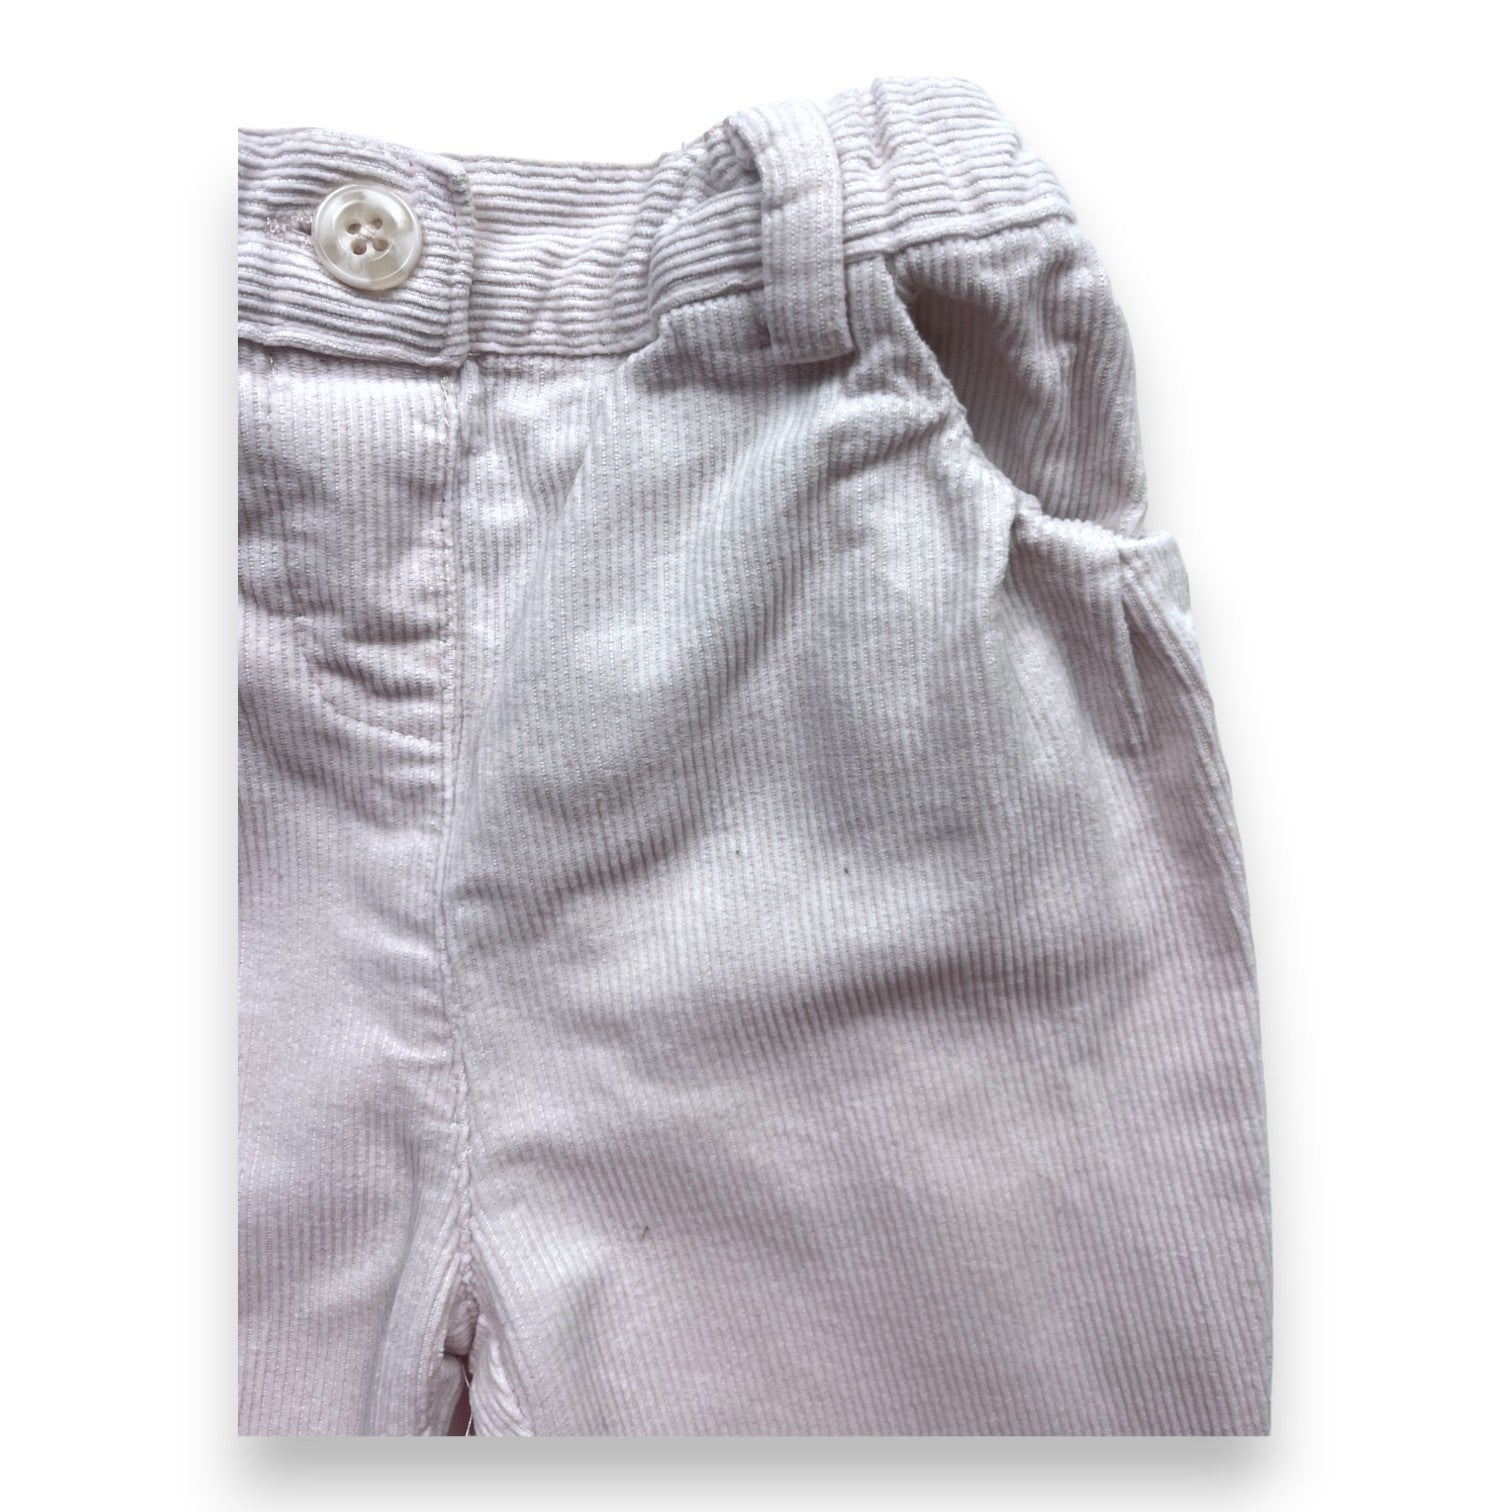 CYRILLUS - Pantalon en velours côtelé rose pâle - 12 mois